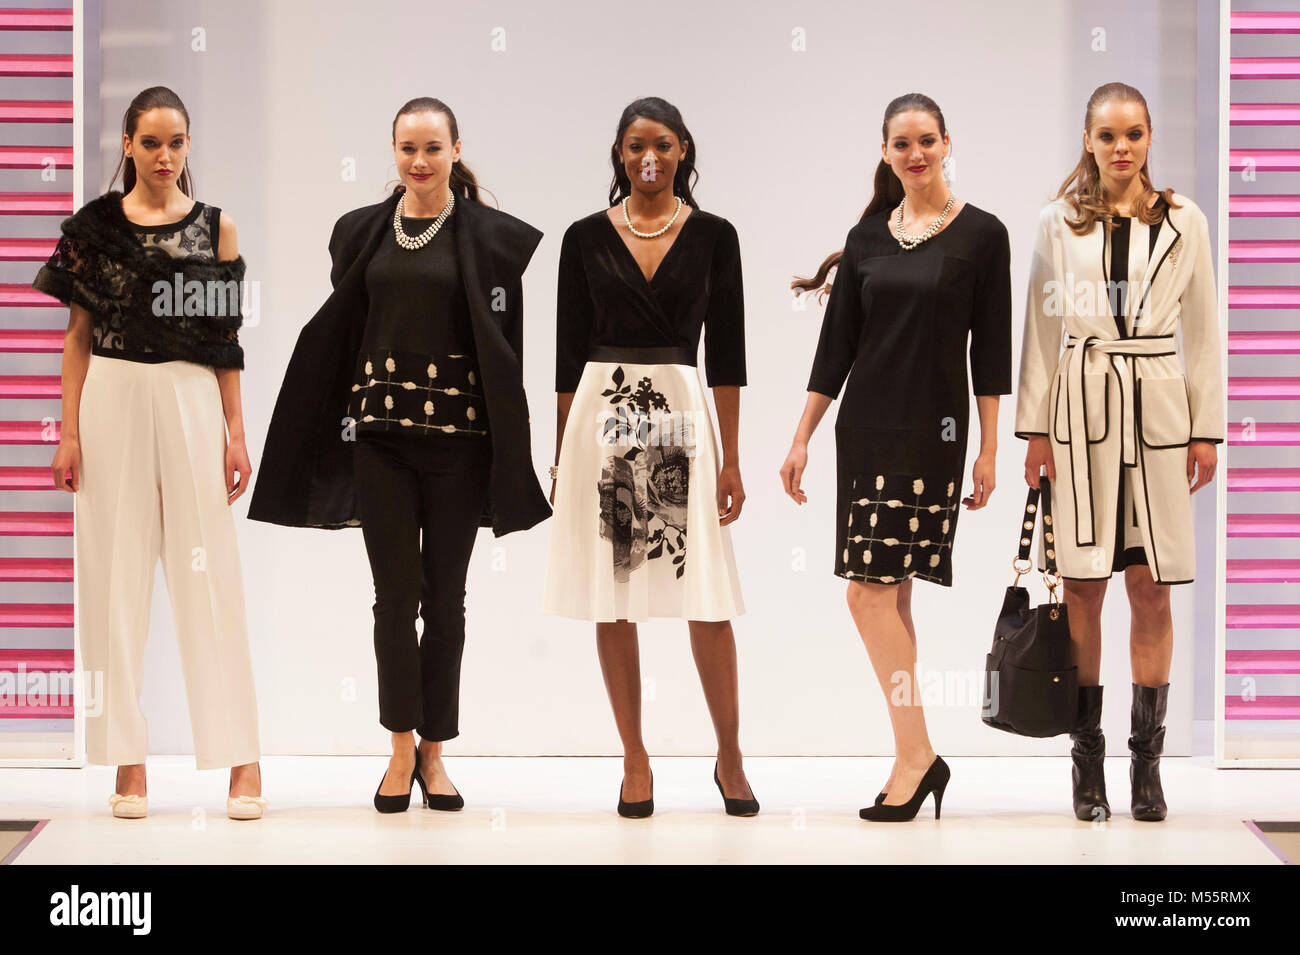 Modelos de moda vestidos de blanco y negro en la pasarela womenswear diseños en moda. El comercio Fashion show corrió 18º-20º febrero de 2018 en el NEC, Birmingham, Reino Unido. Destacó